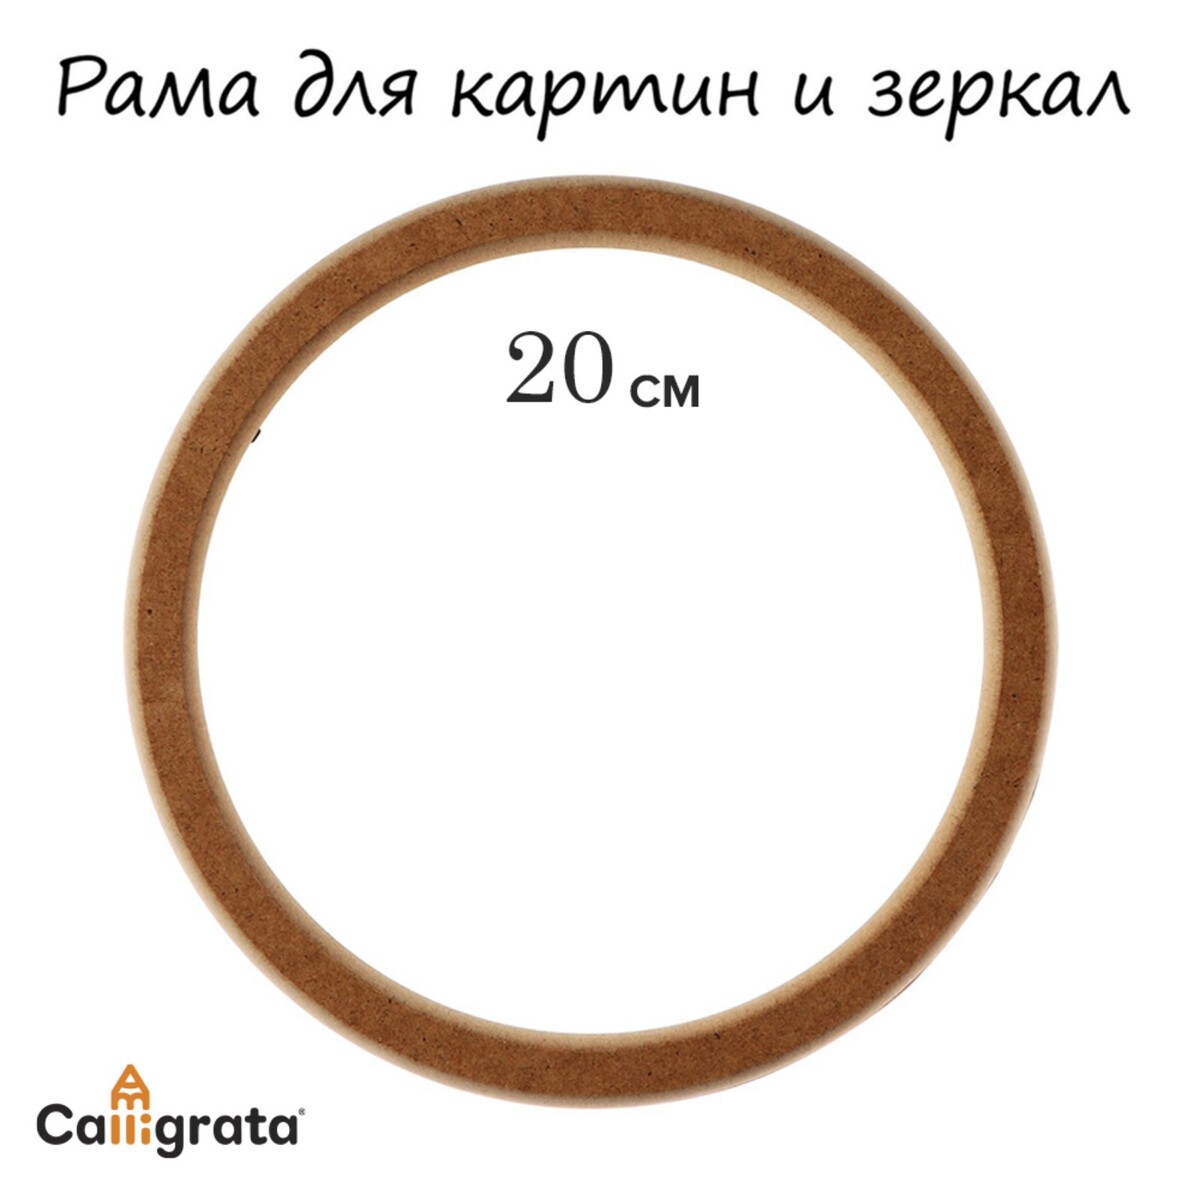 Рама для картин (зеркал) круглая, мдф, d-20, 277200 Calligrata, цвет коричневый